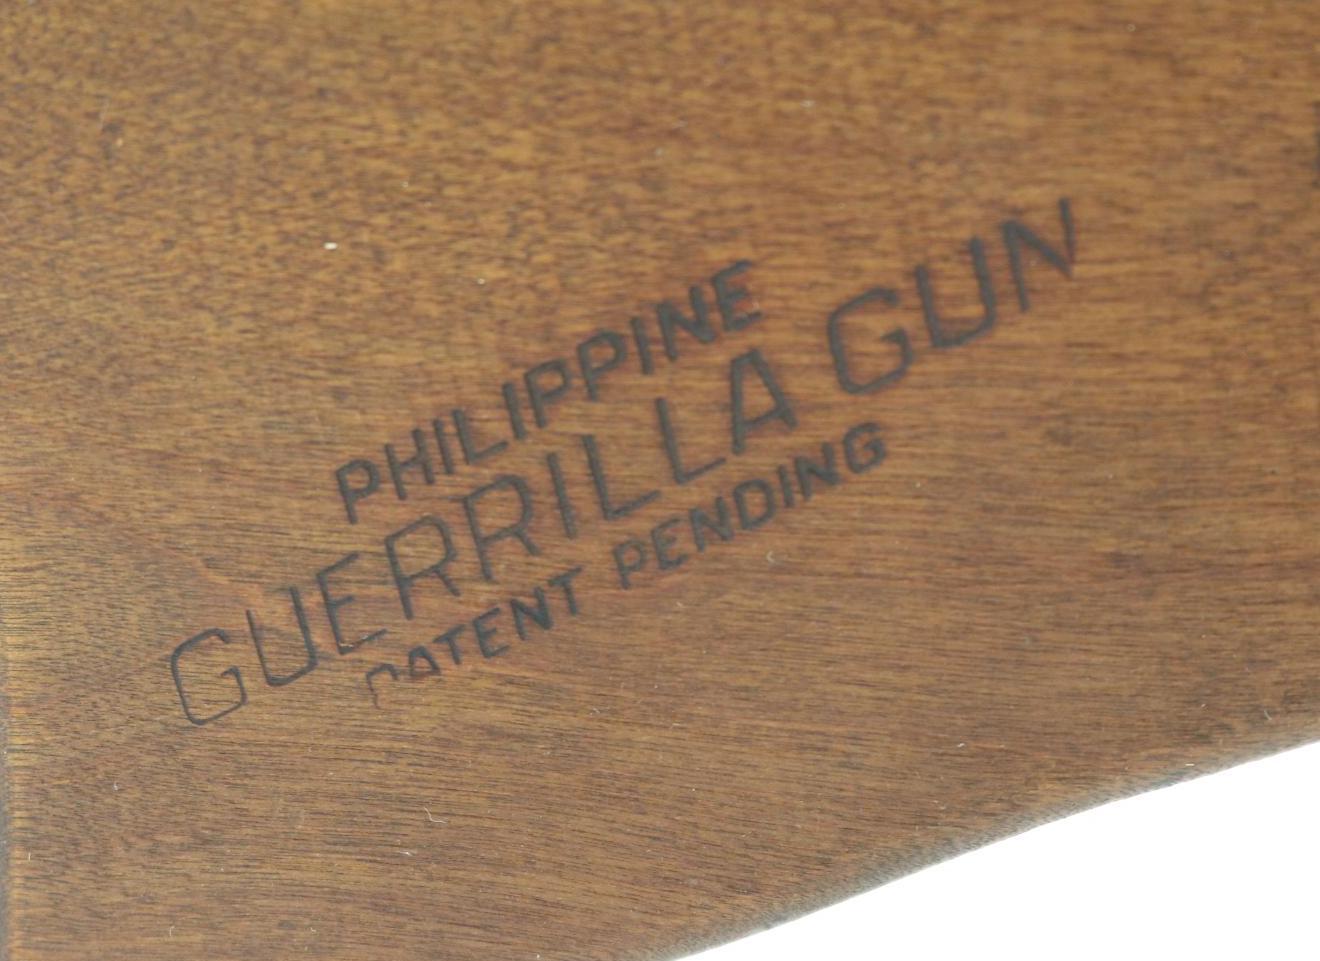 Richardson Industries M5 Philippine Guerilla Gun Slam Fire Shotgun.